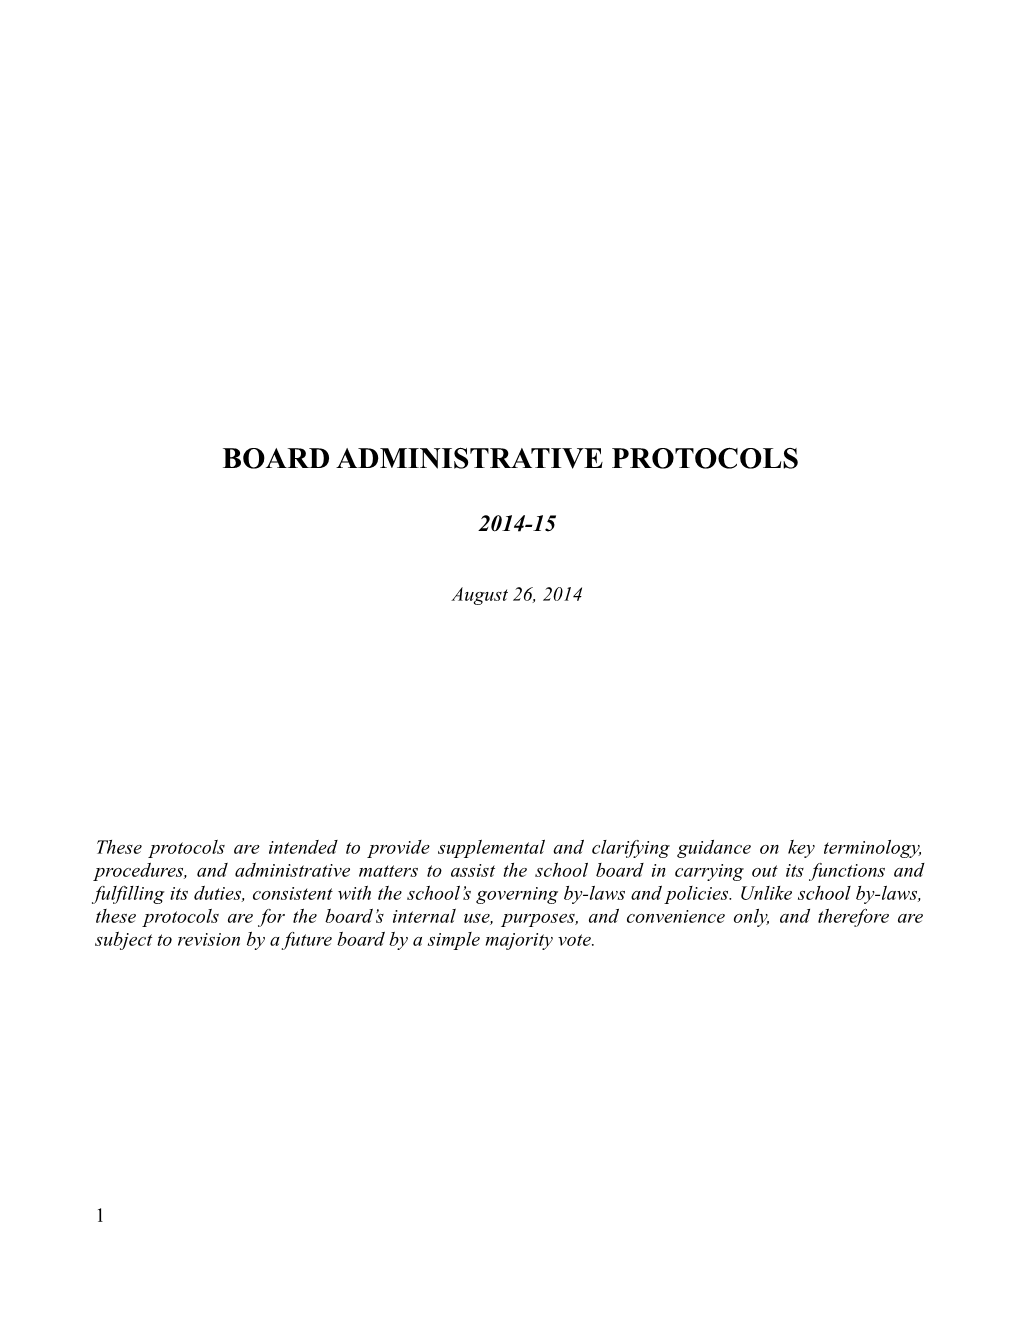 Board Administrative Protocols